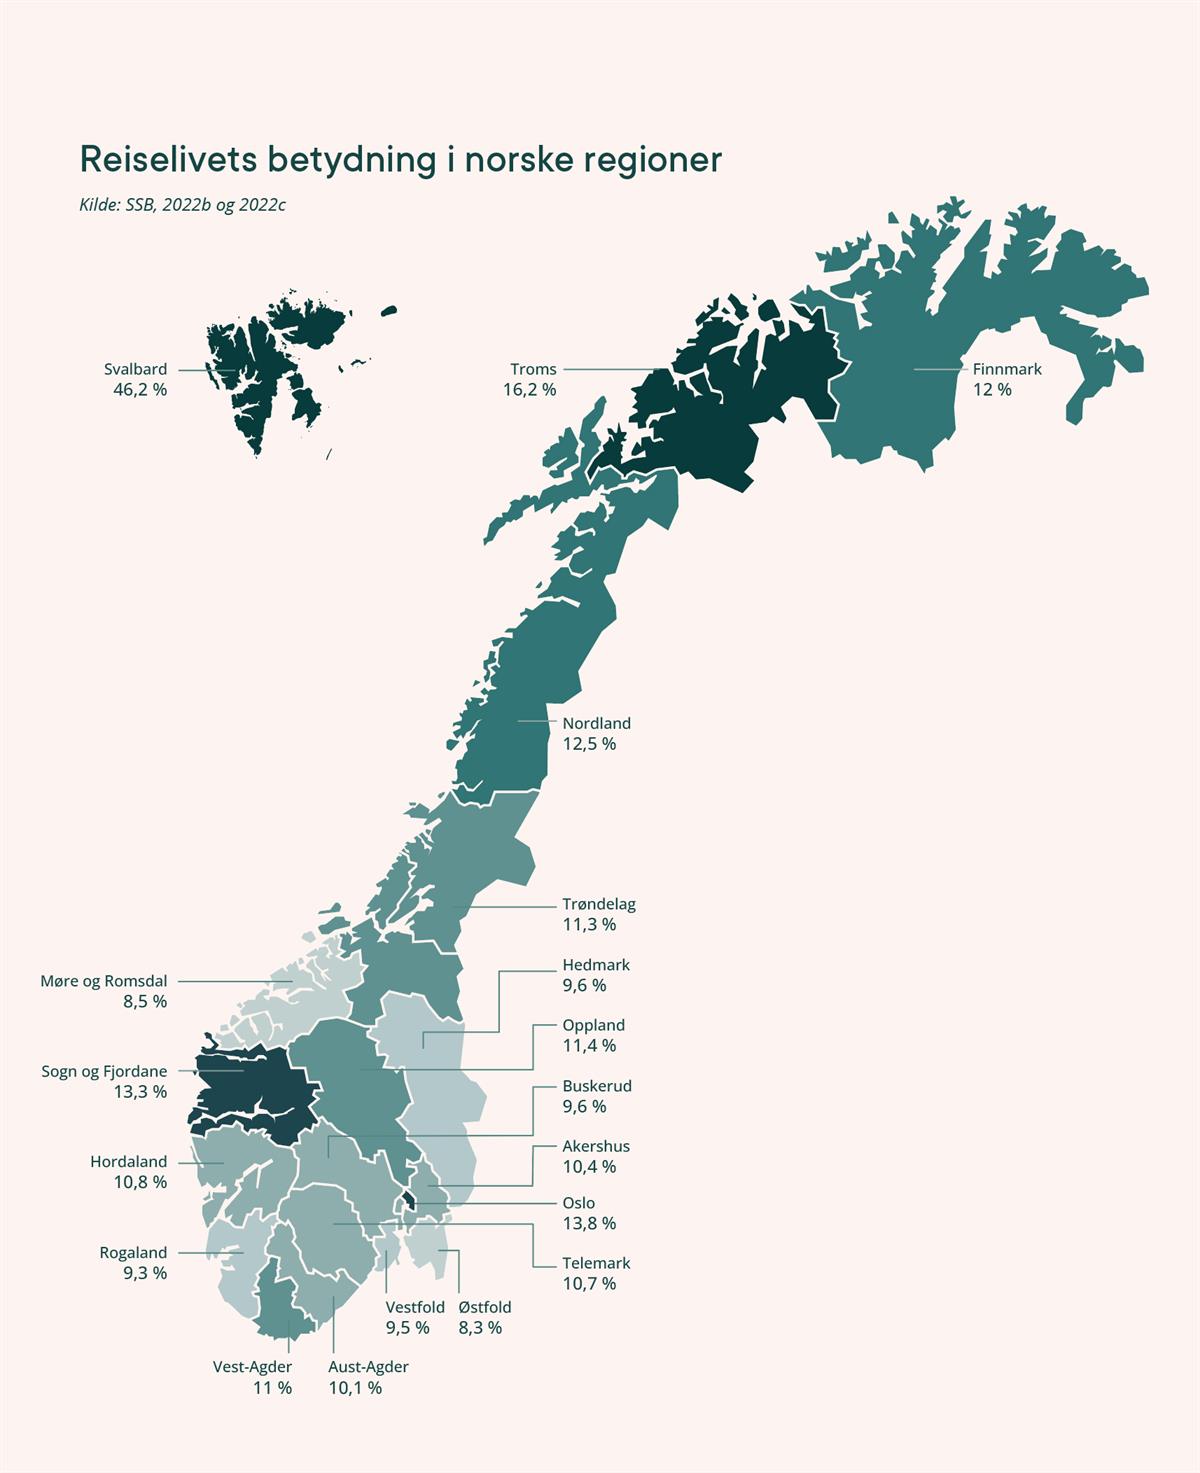 Figur: Reiselivets betydning i norske regioner
- Svalbard: 46,2 %
- Troms: 16,2 %
- Finnmark: 12 %
- Nordland: 12,5 %
- Trøndelag: 11,3 %
- Hedmark: 9,6 %
- Møre og Romsdal: 8,5 %
- Oppland: 11,4 %
- Sogn og Fjordane: 13,3 %
- Buskerud: 9,6 %
- Akershus: 10,4 %
- Hordaland: 10,8 %
- Oslo: 13,8 %
- Rogaland: 9,3 %
- Telemark: 10,7 %
- Vest-Agder: 11 %
- Aust-Agder: 10,1 %
- Vestfold: 9,5 %
- Østfold: 8,3 %.
Kilde: SSB, 2022b og 2022c